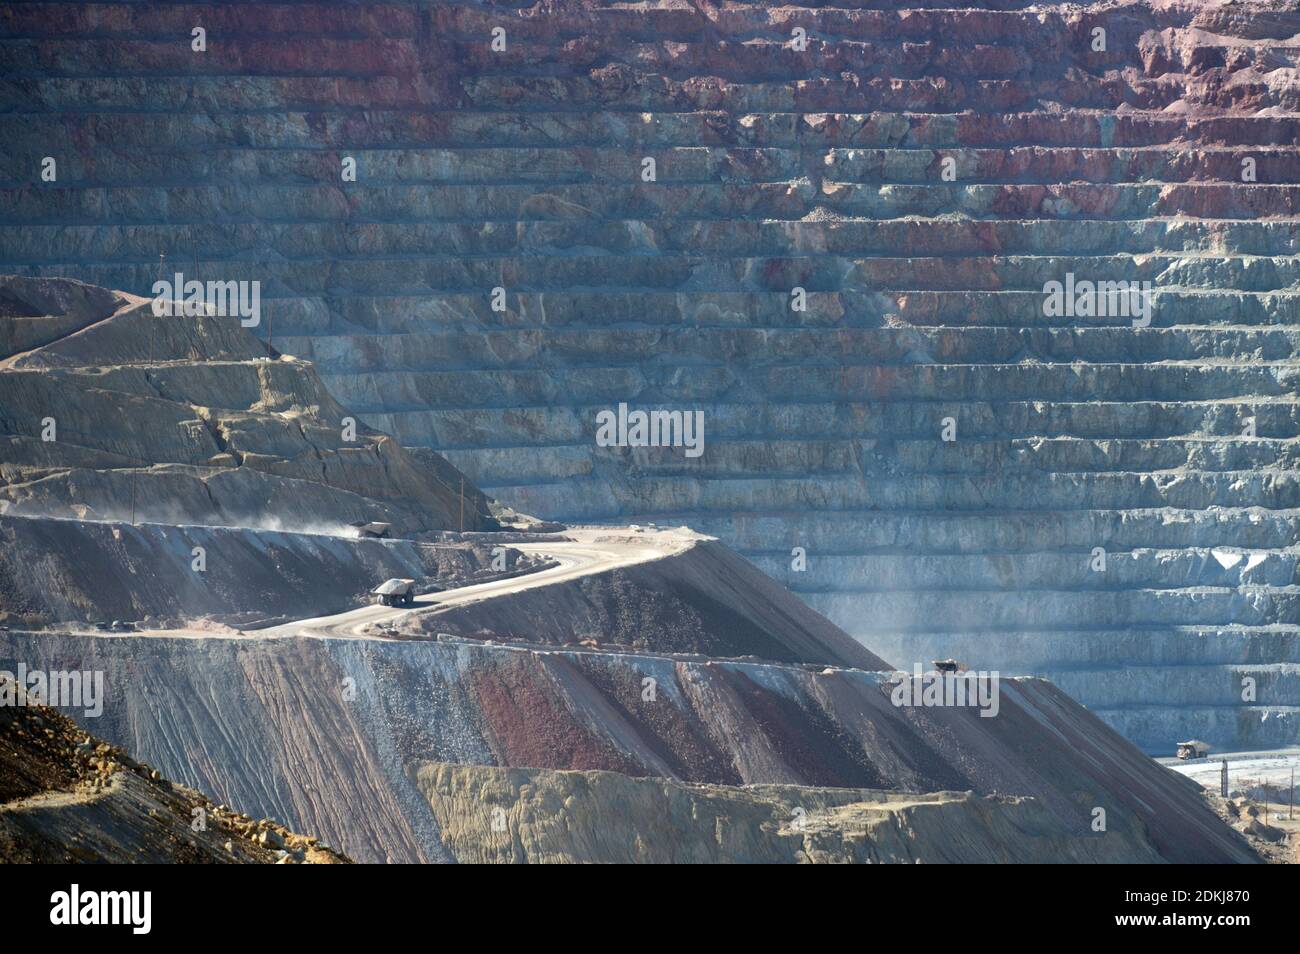 Trucks carrying ore in the Santa Rita or Chino open pit copper mine, near Silver City, New Mexico Stock Photo